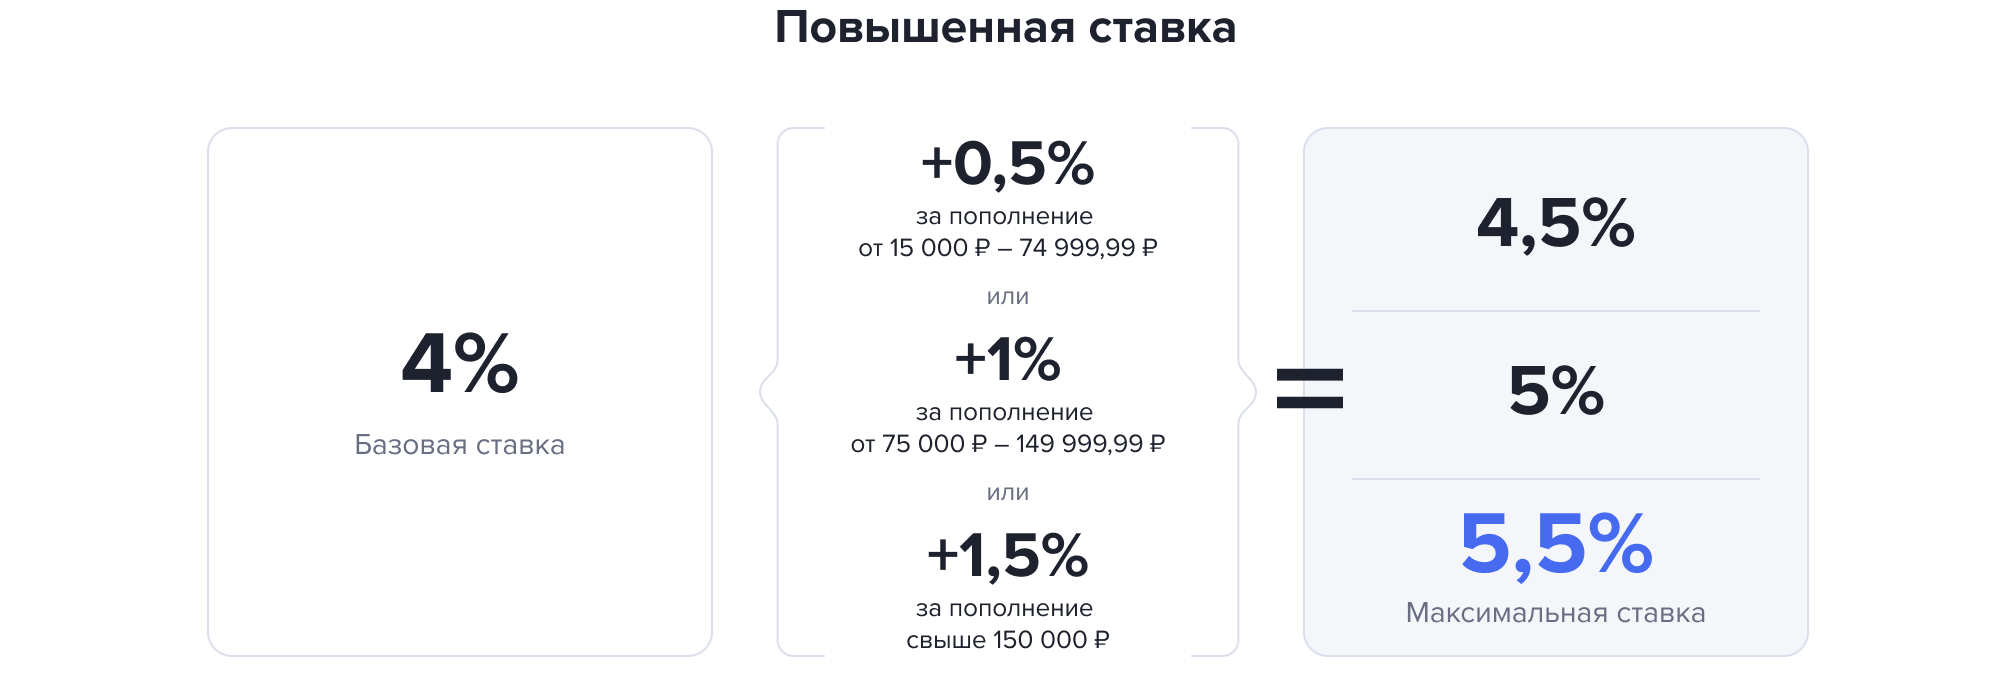 Как открыть счет в Газпромбанке физическому лицу - самостоятельно или через банк